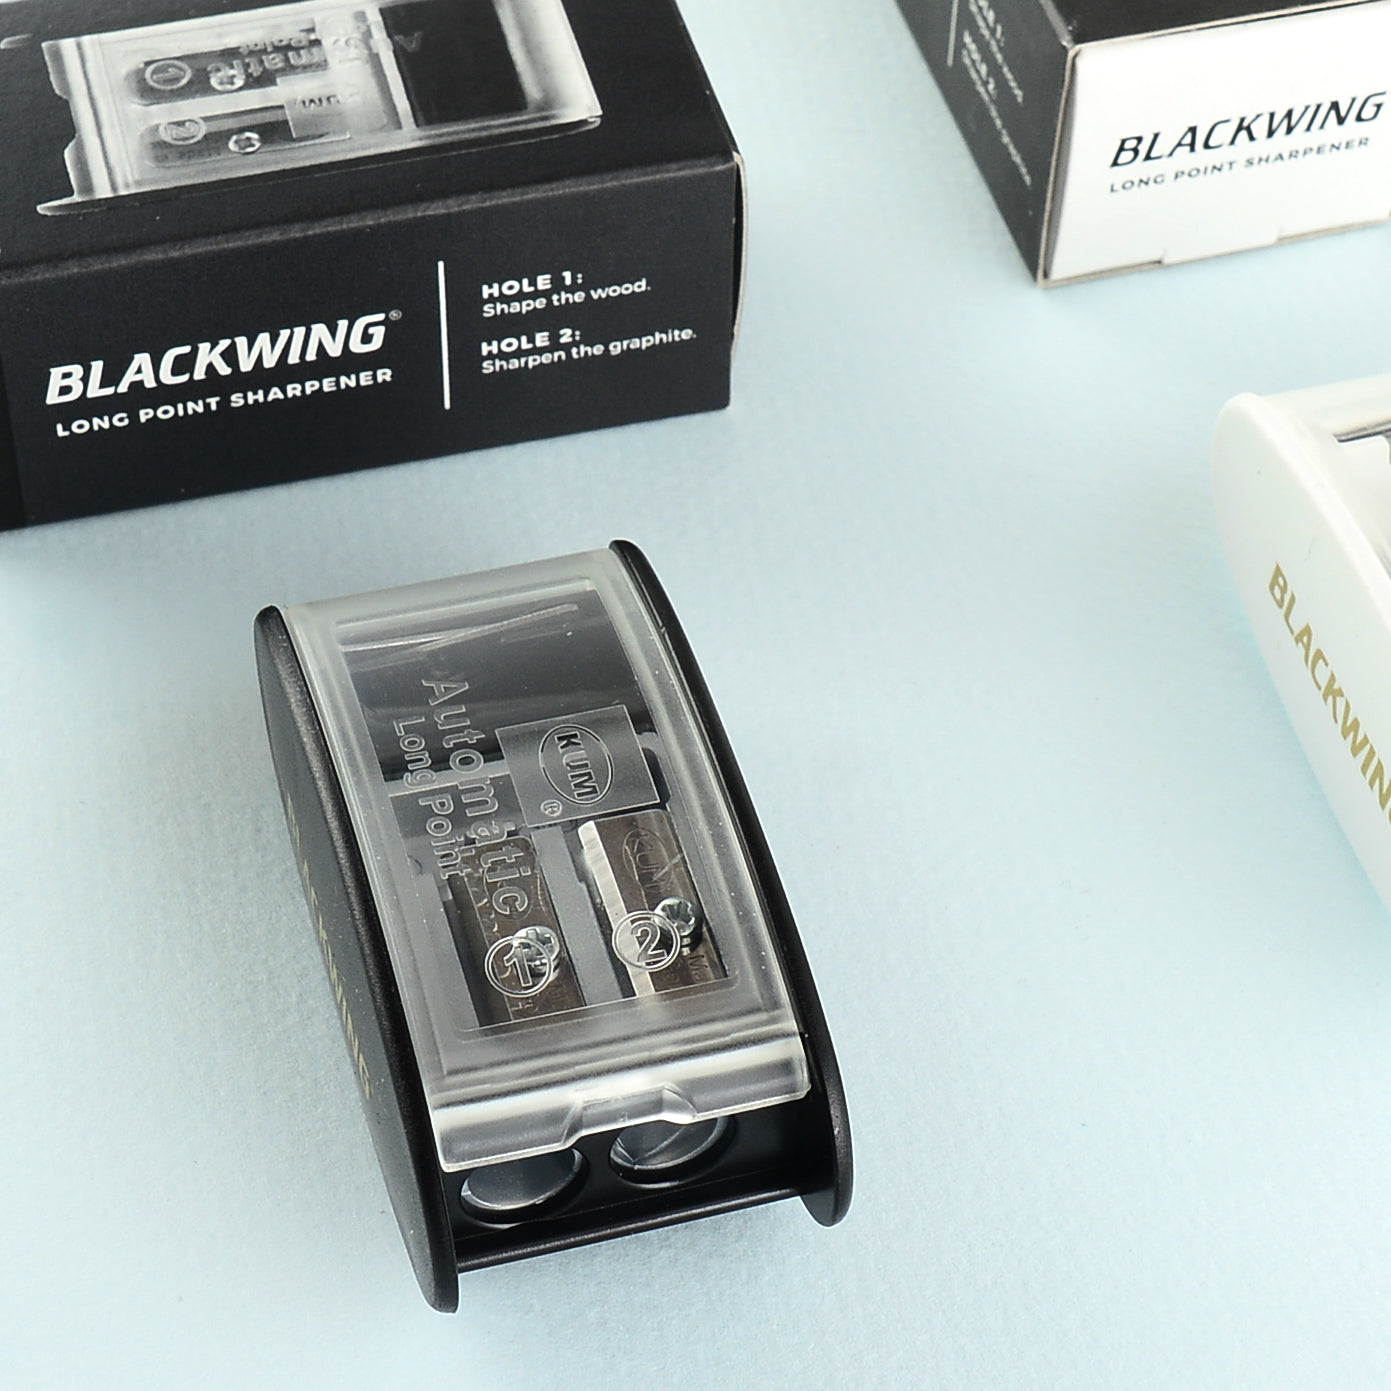 Palomino Blackwing KUM Long Point Sharpener | Black or White 